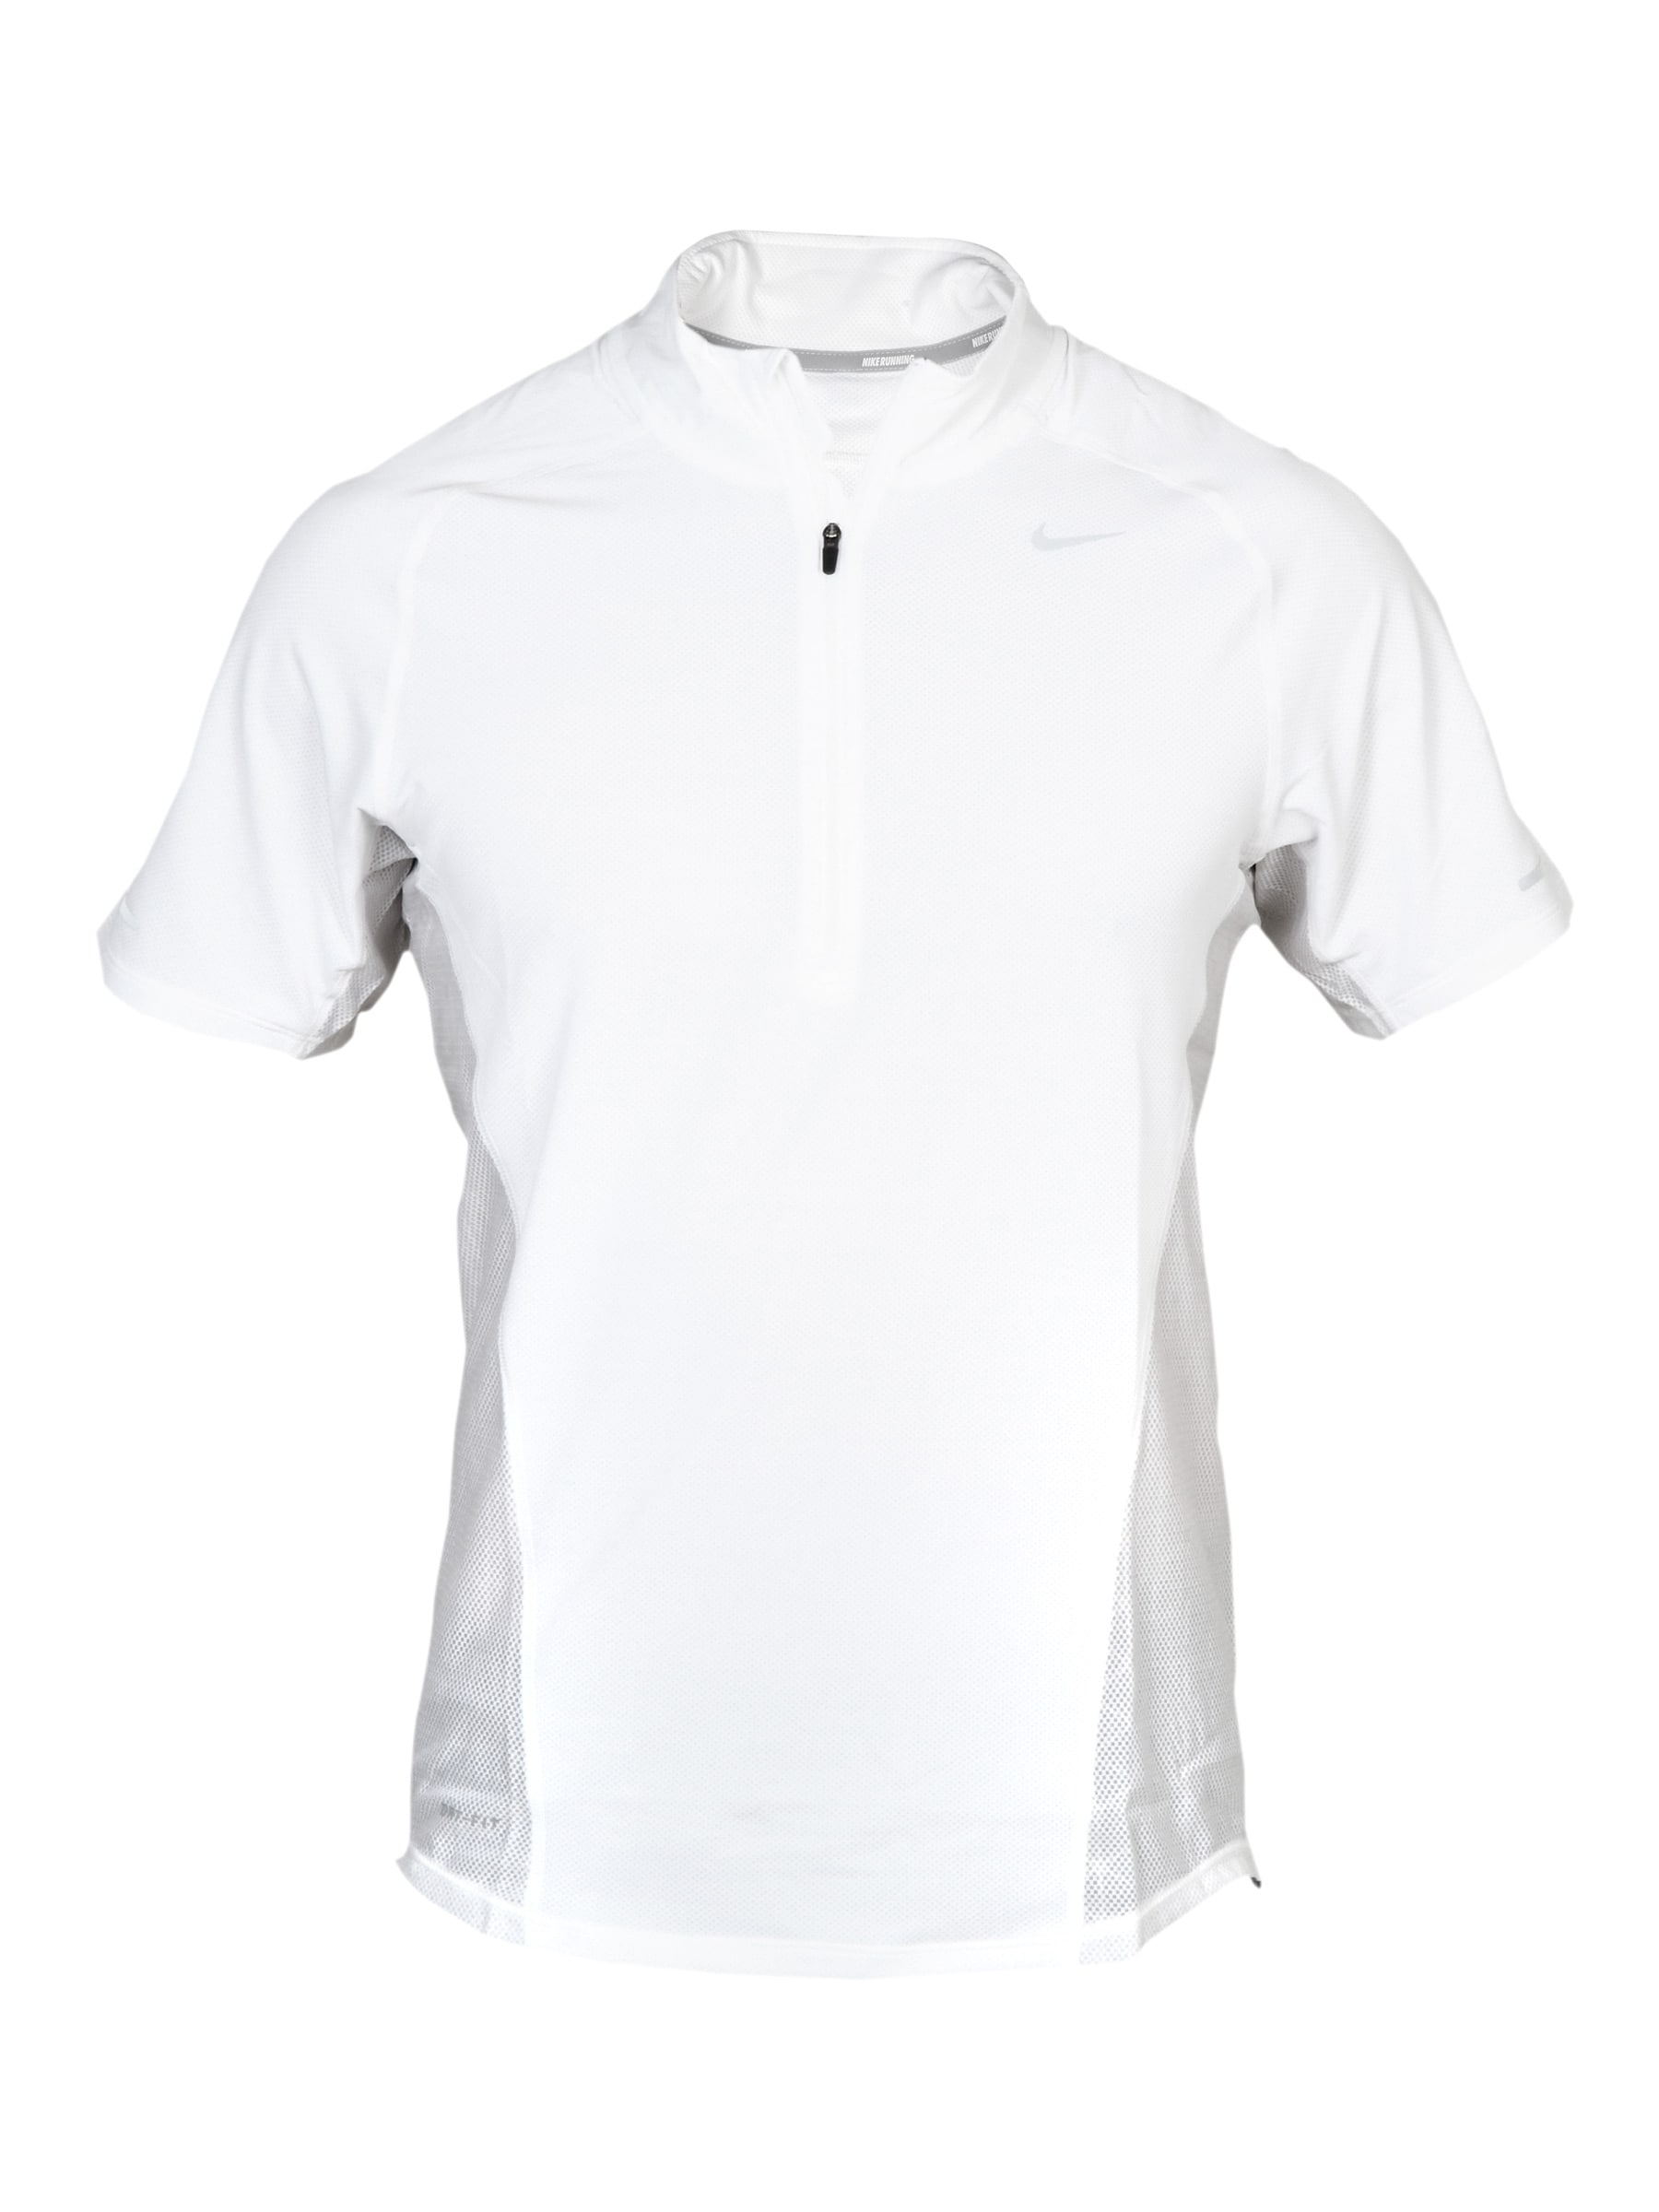 Nike Men's As Spher White T-shirt